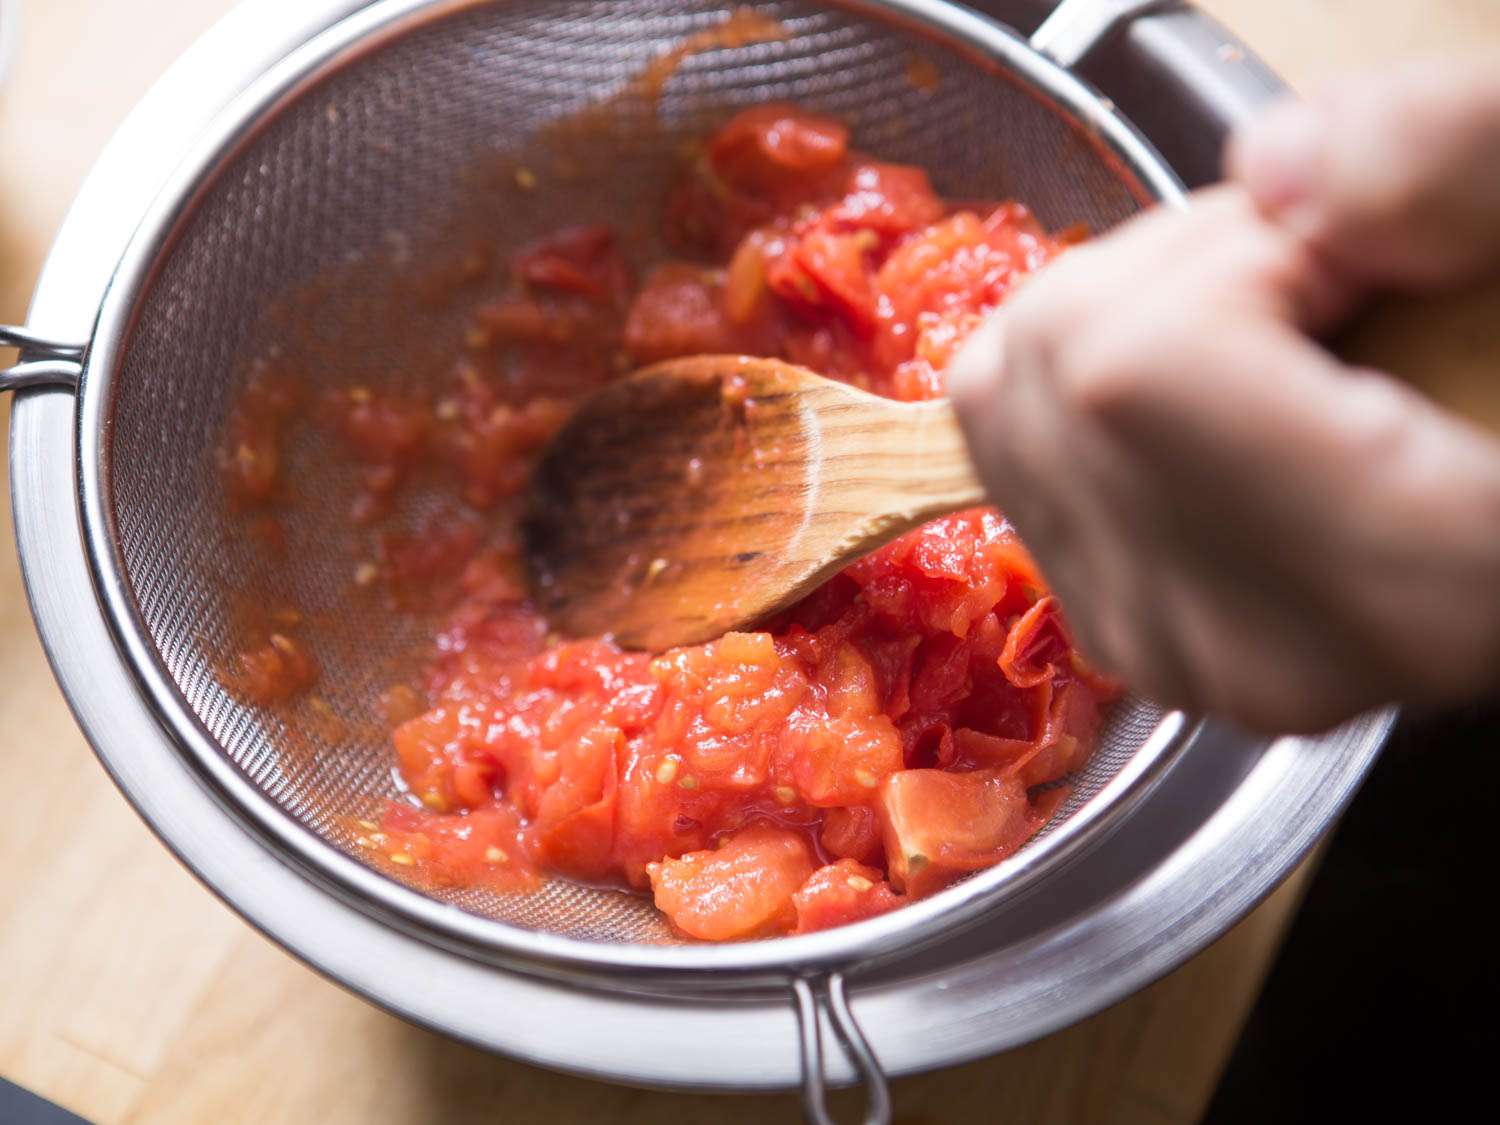 用细网滤网将炖好的番茄压碎并刮开。